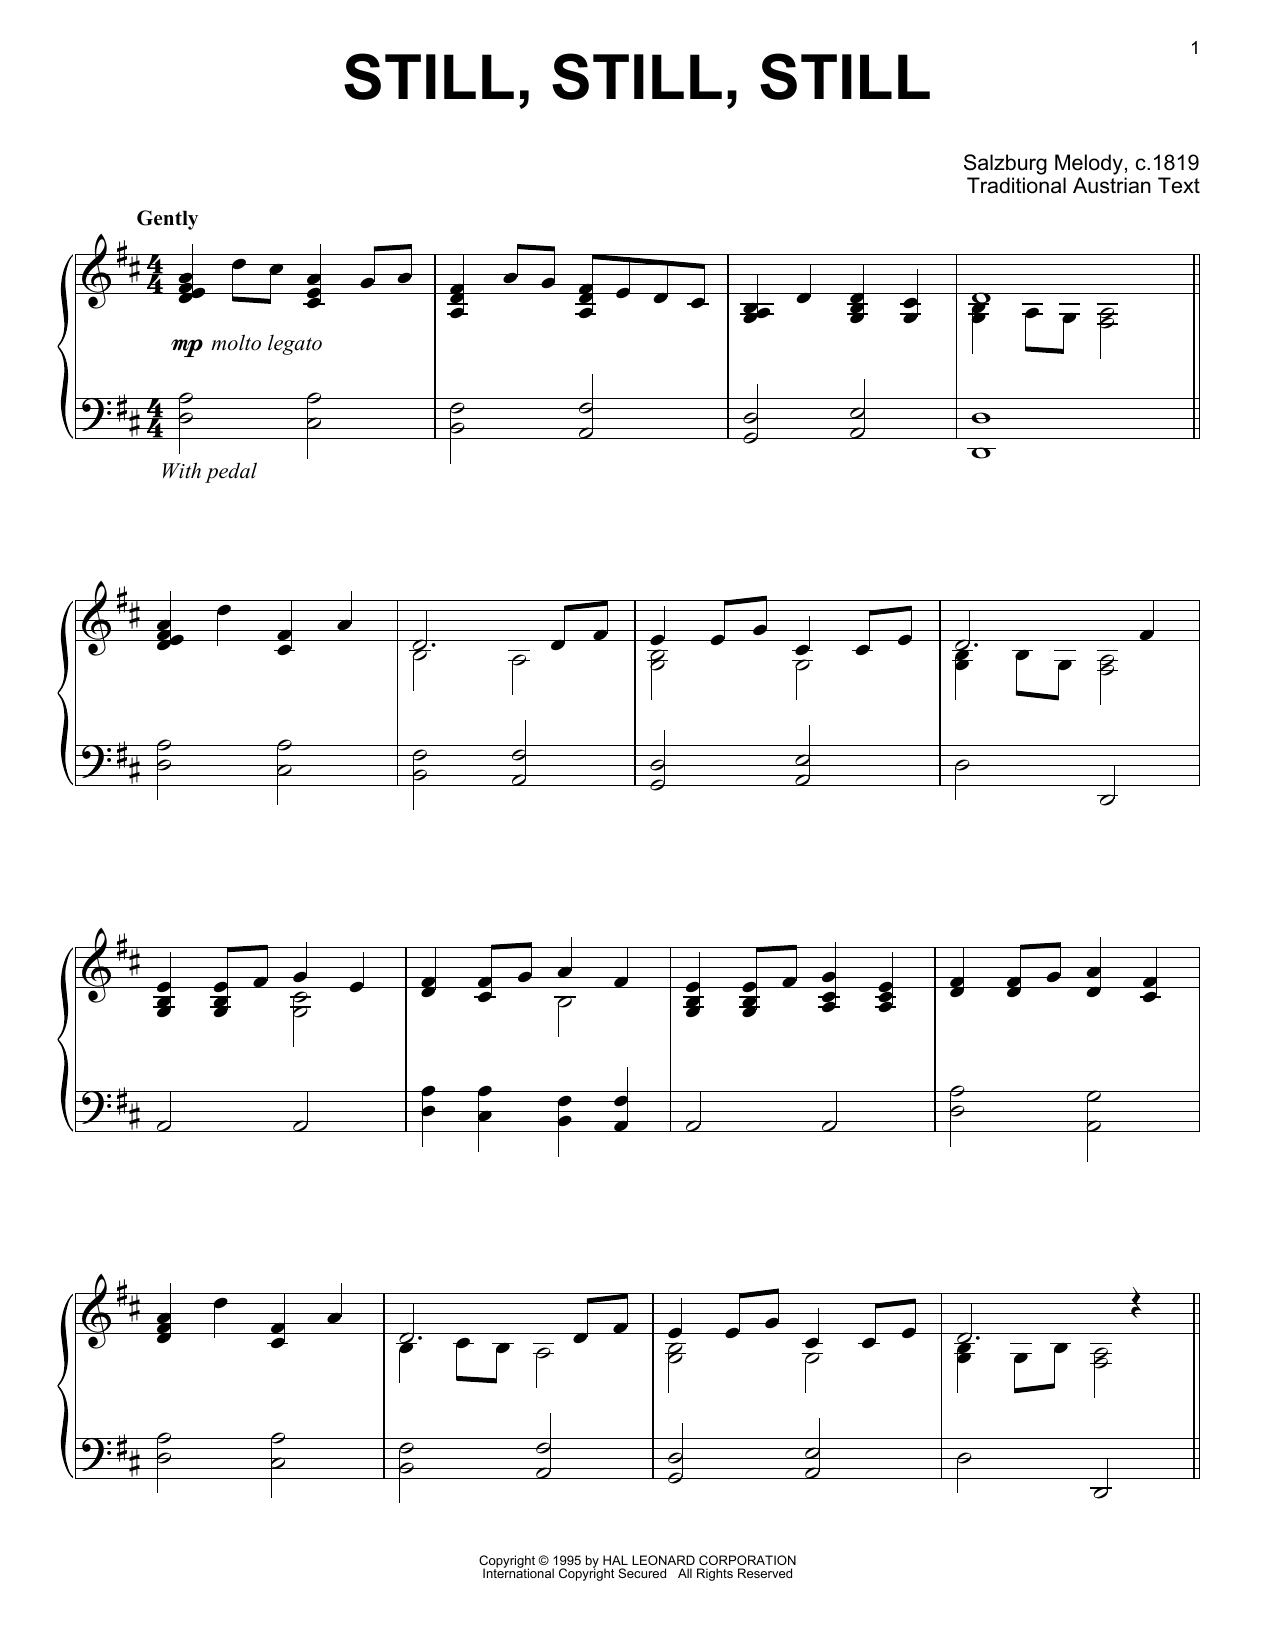 Traditional Austrian Text Still, Still, Still Sheet Music Notes & Chords for Ukulele - Download or Print PDF